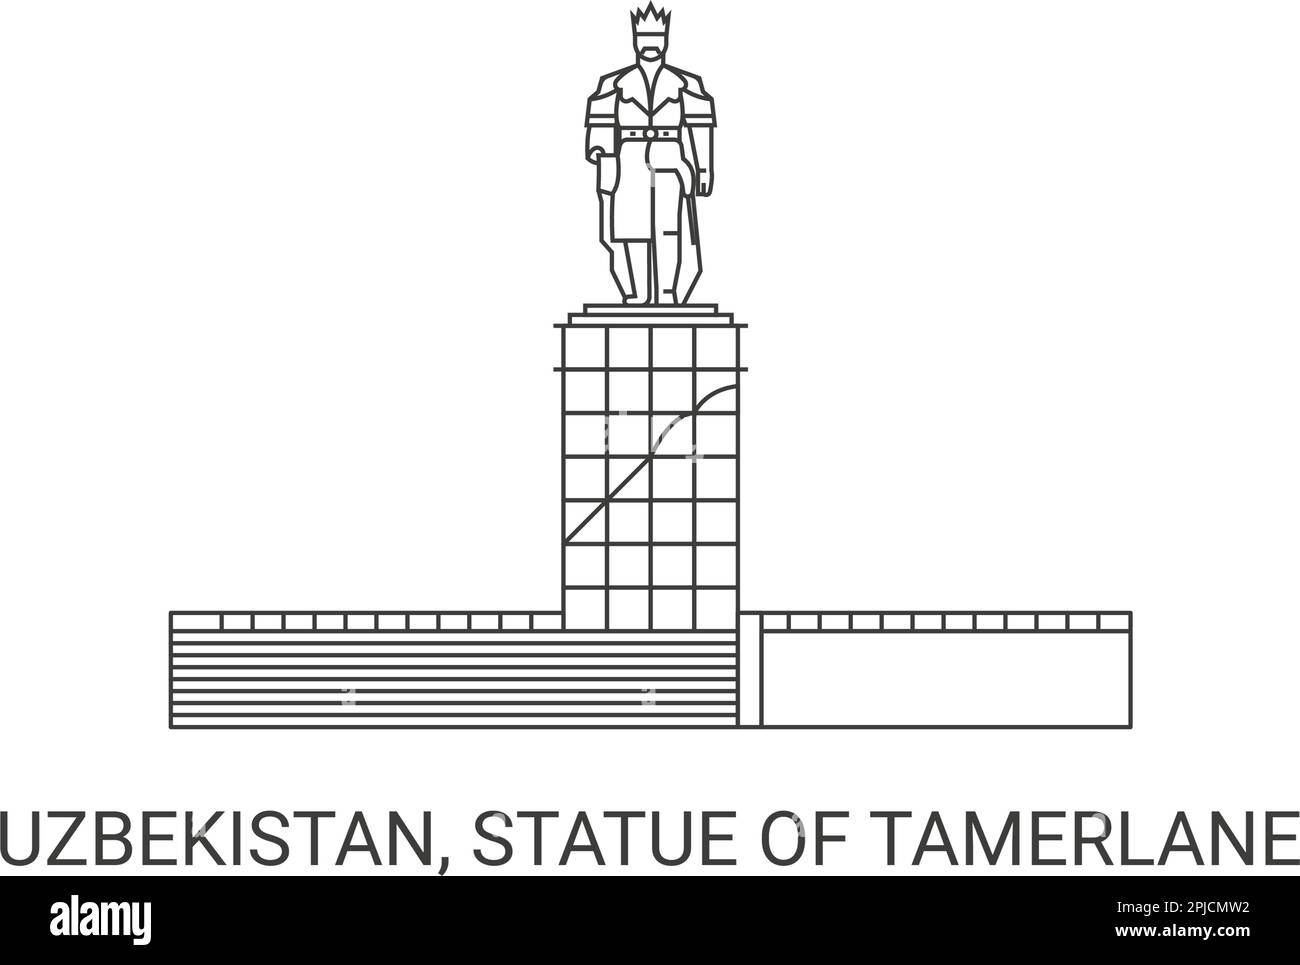 Uzbekistan, Statue Of Tamerlane, travel landmark vector illustration Stock Vector